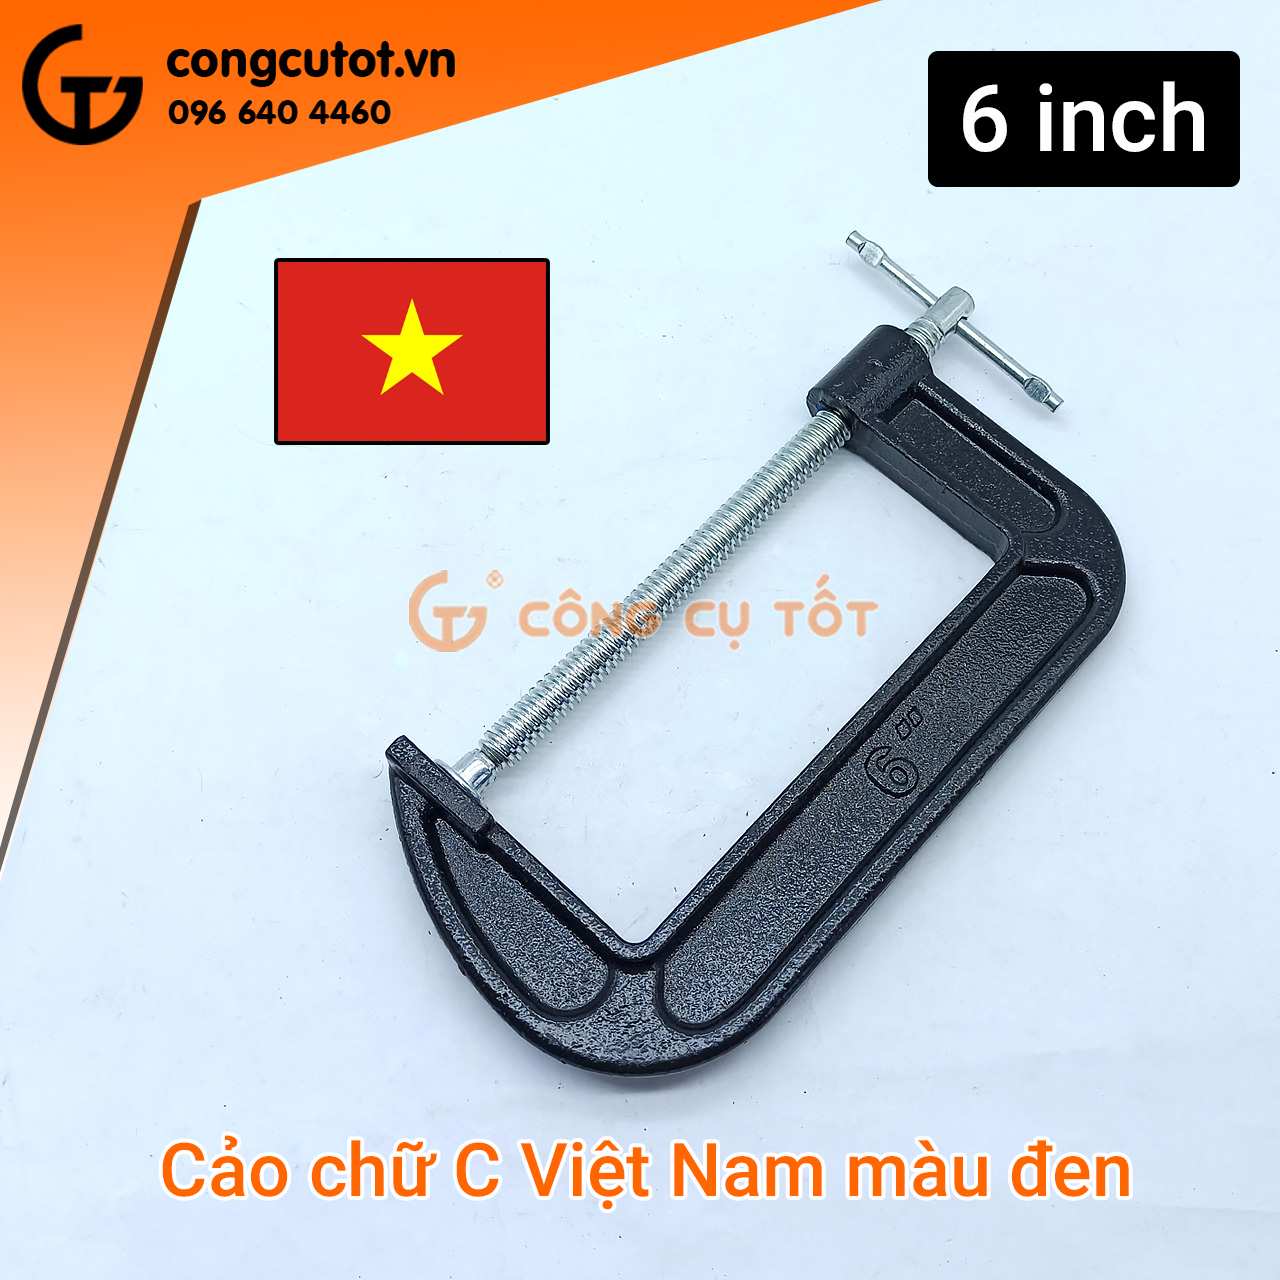 Cảo chữ C Việt Nam màu đen 6 inch